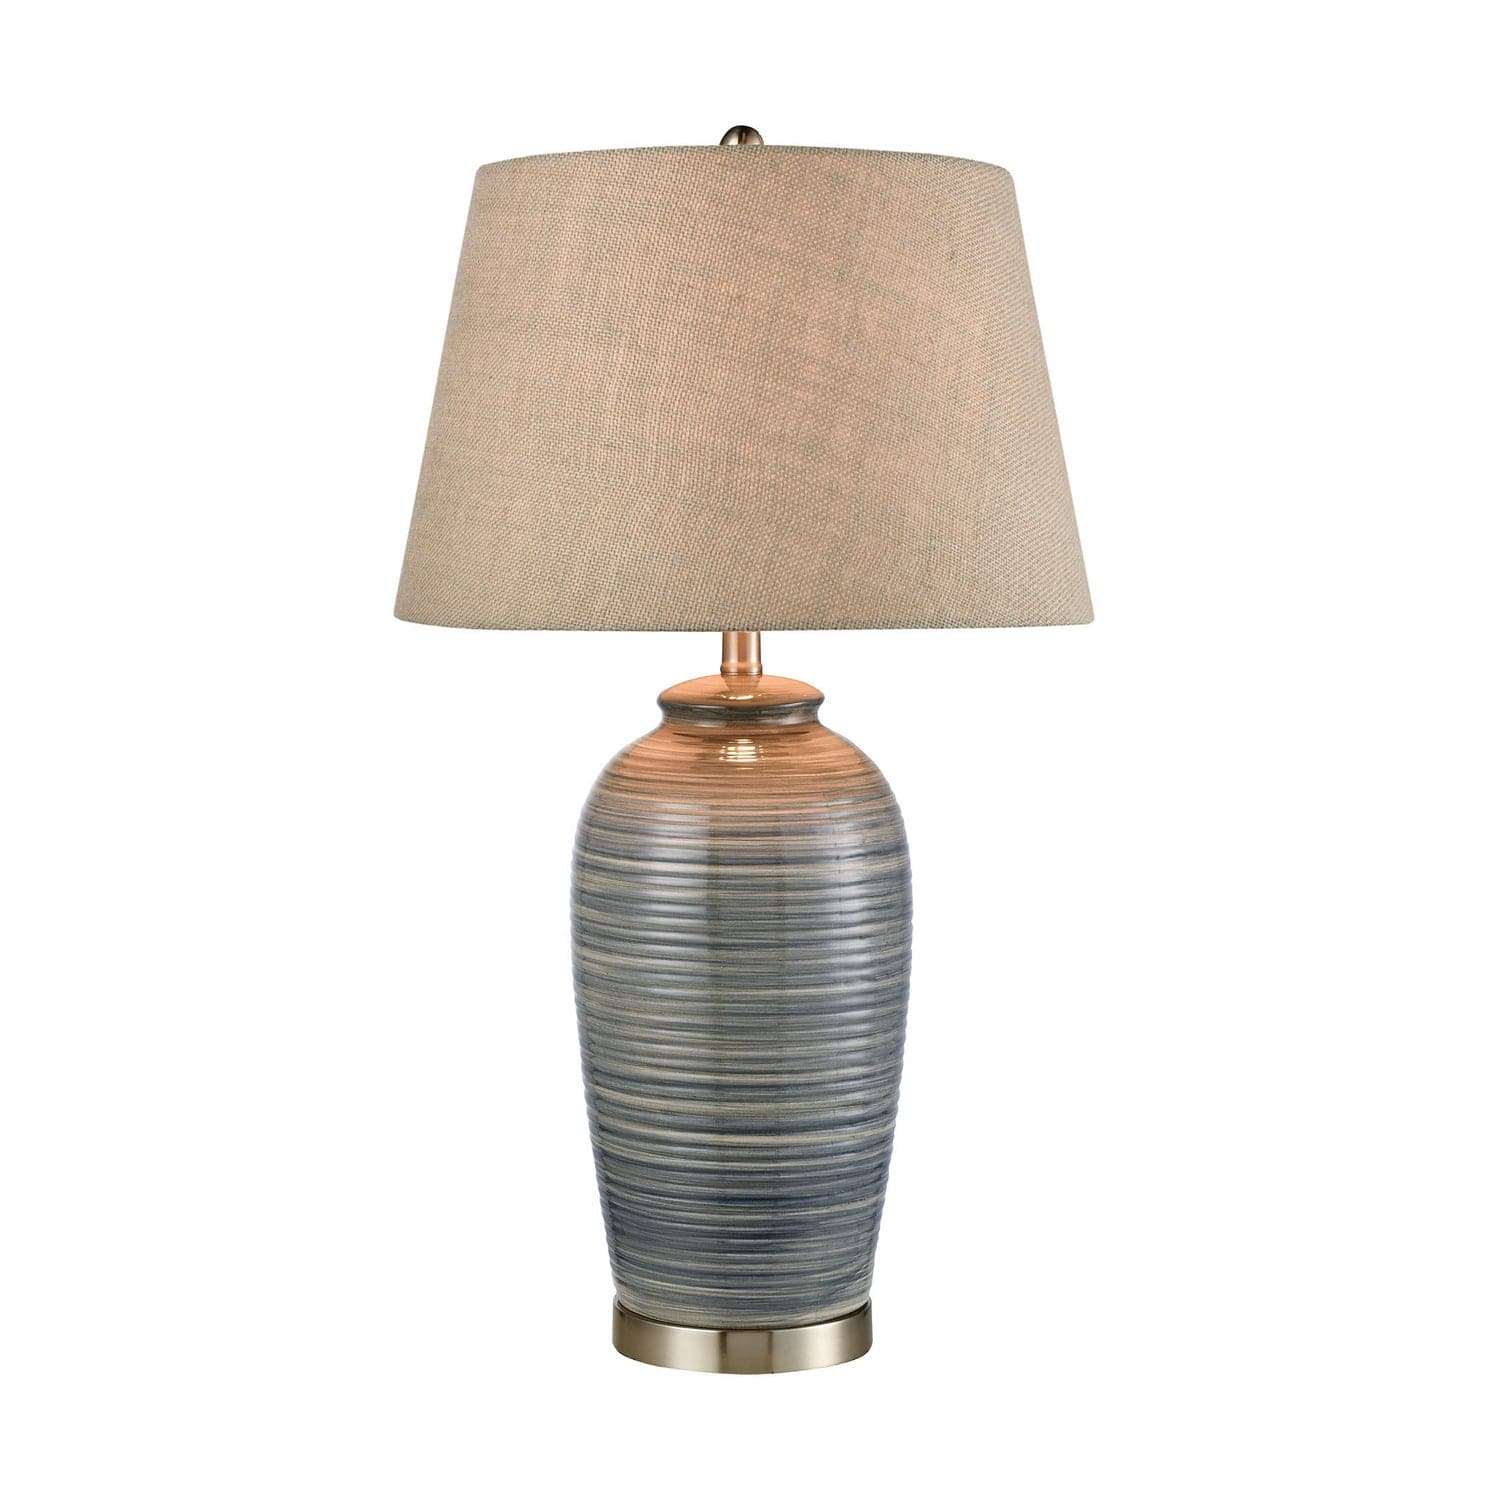 ELK Home - 77155 - One Light Table Lamp - Monterey - Blue